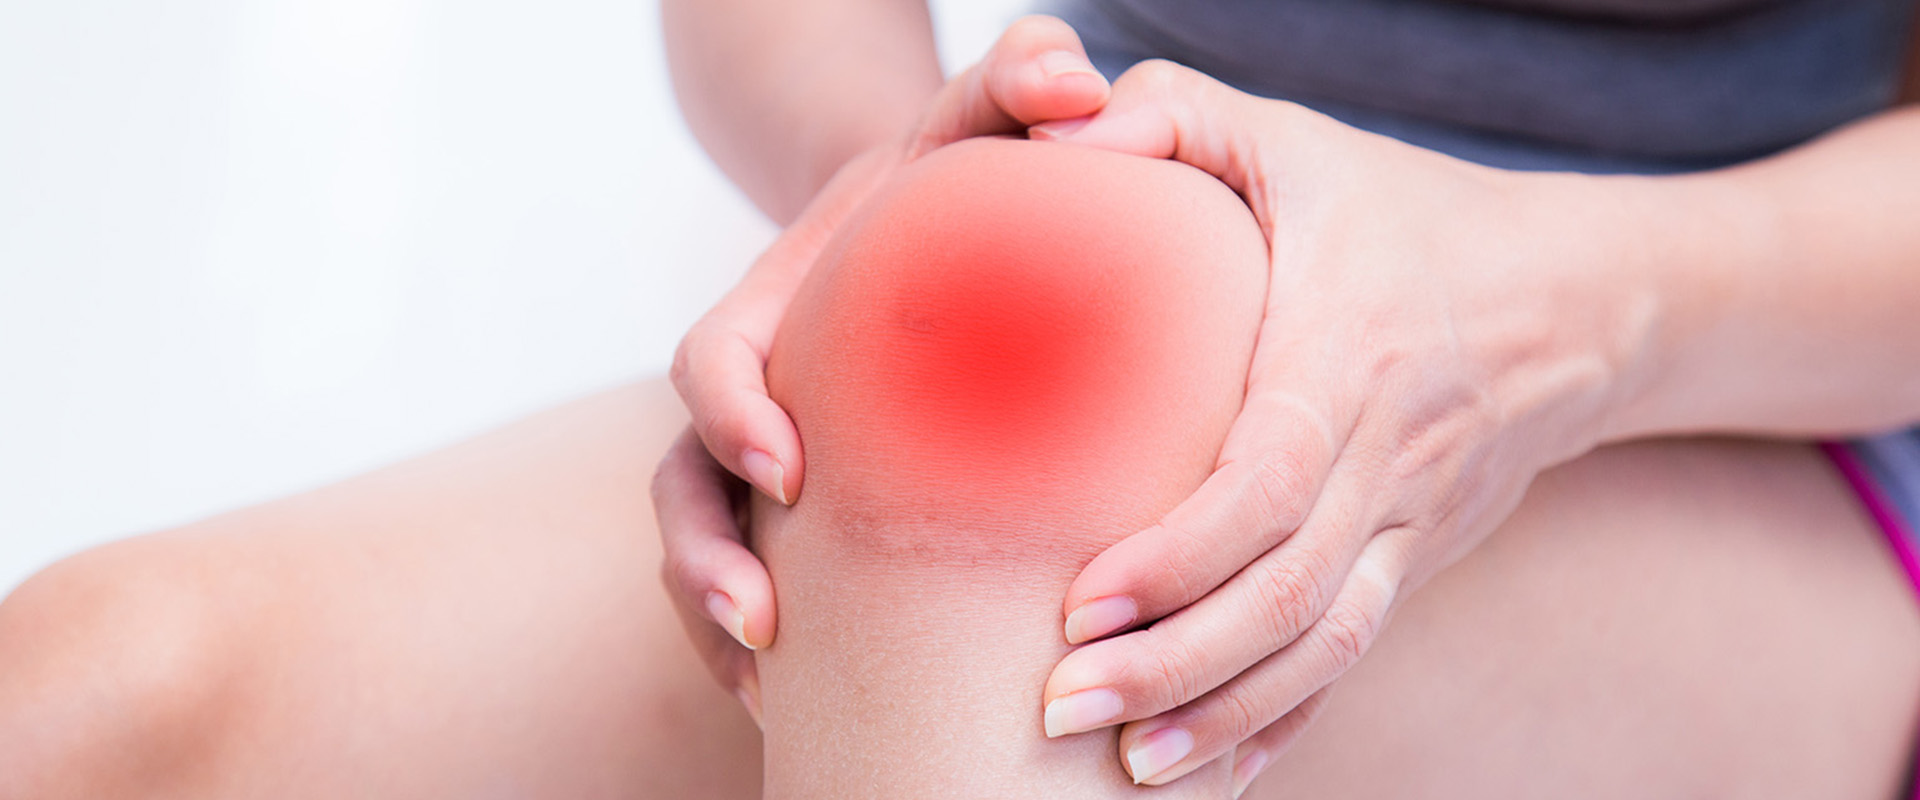 az artrózis és ízületi gyulladás kezeléséről enyhítse a bokaízület ízületi fájdalmát